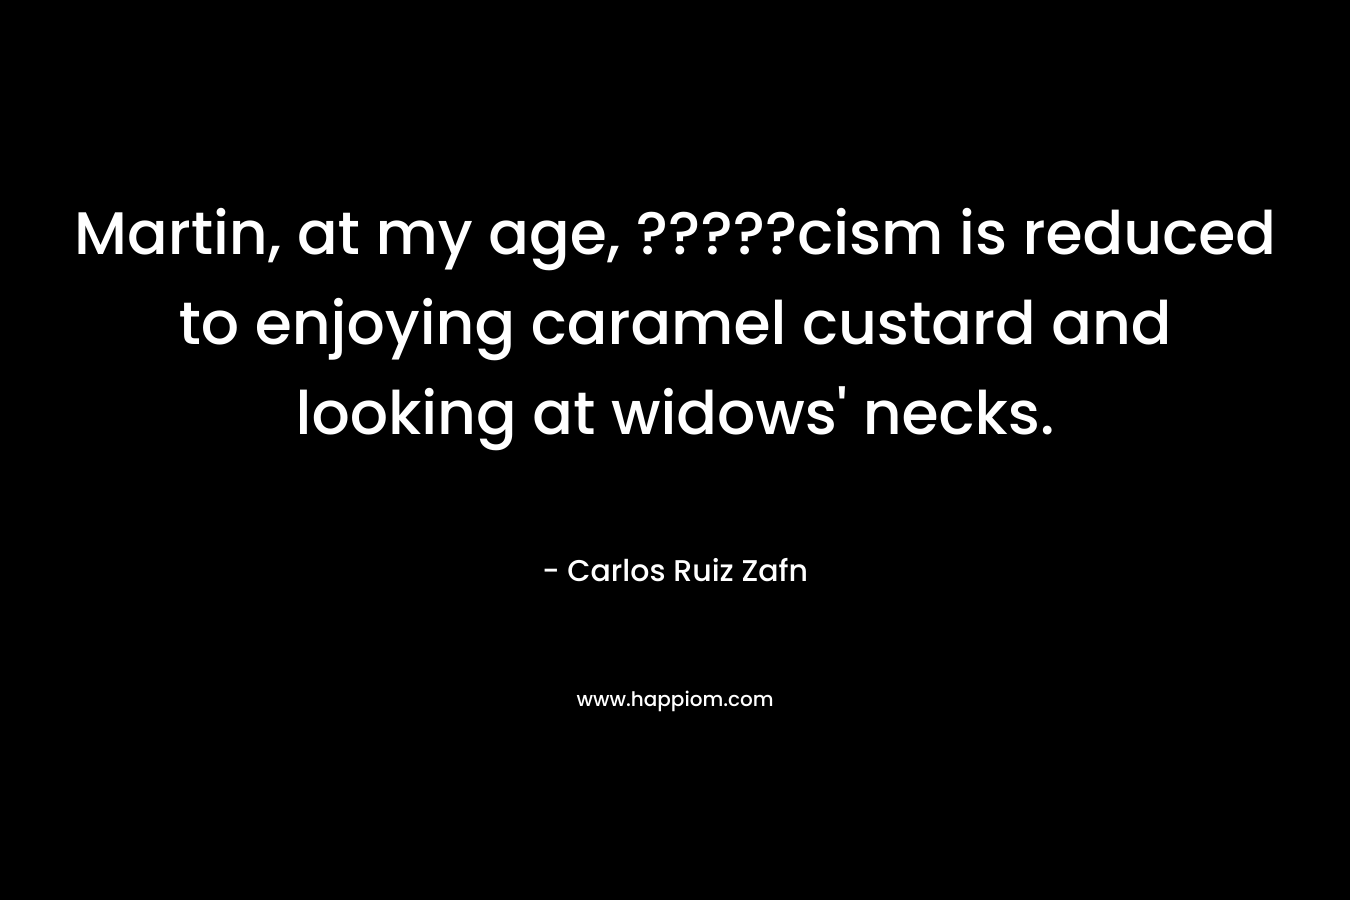 Martin, at my age, ?????cism is reduced to enjoying caramel custard and looking at widows’ necks. – Carlos Ruiz Zafn